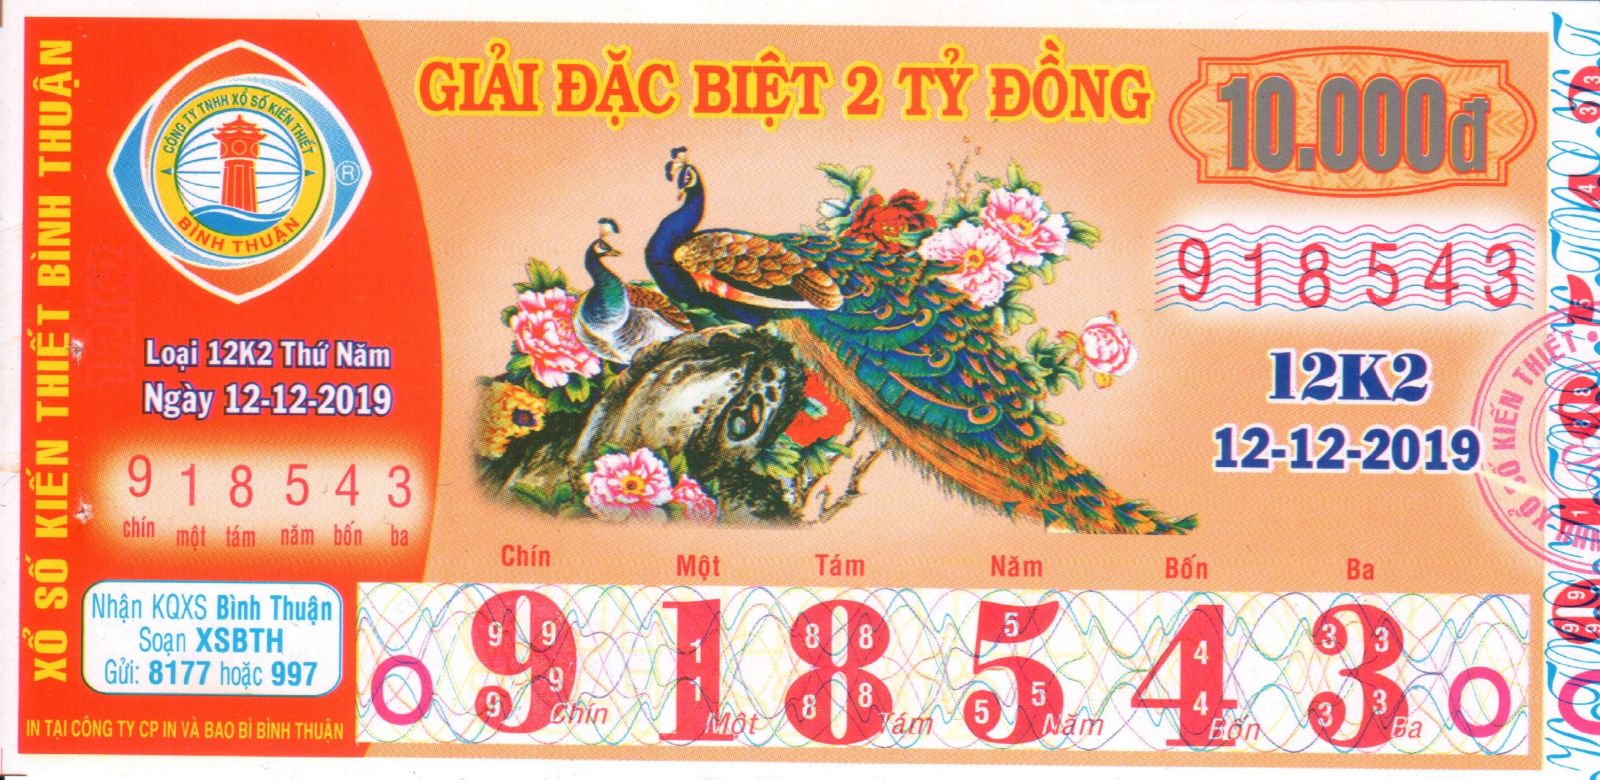 Xổ Số Bình Thuận